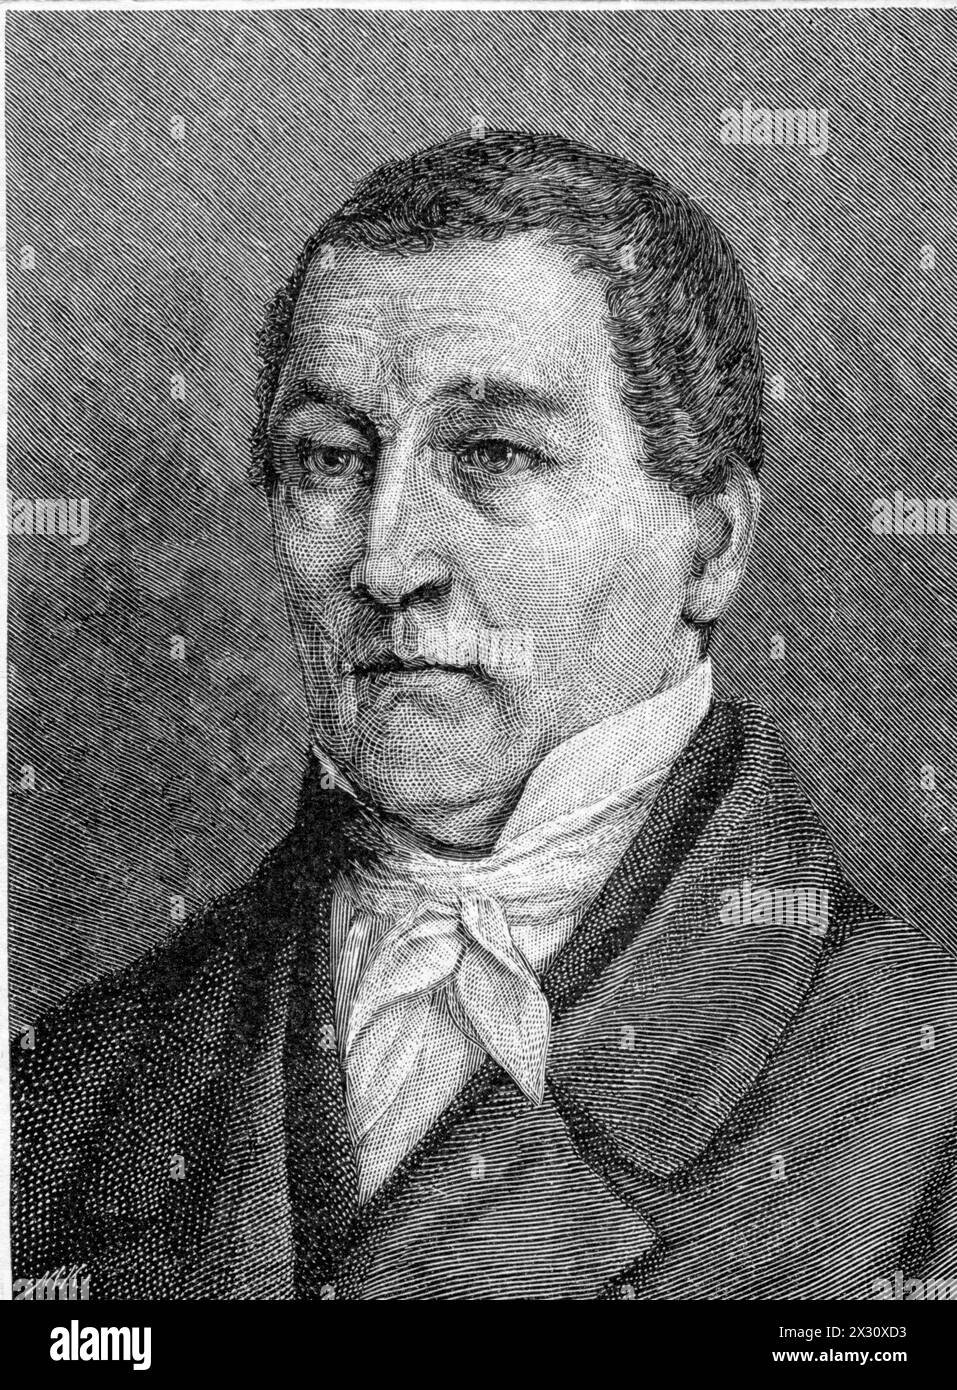 Spohr, Ludwig, 5.4.1784 - 22,10 1859, compositeur et chef d'orchestre allemand, gravure sur bois de Max Klinkicht, ADDITIONAL-RIGHTS-LEARANCE-INFO-NOT-AVAILABLE Banque D'Images